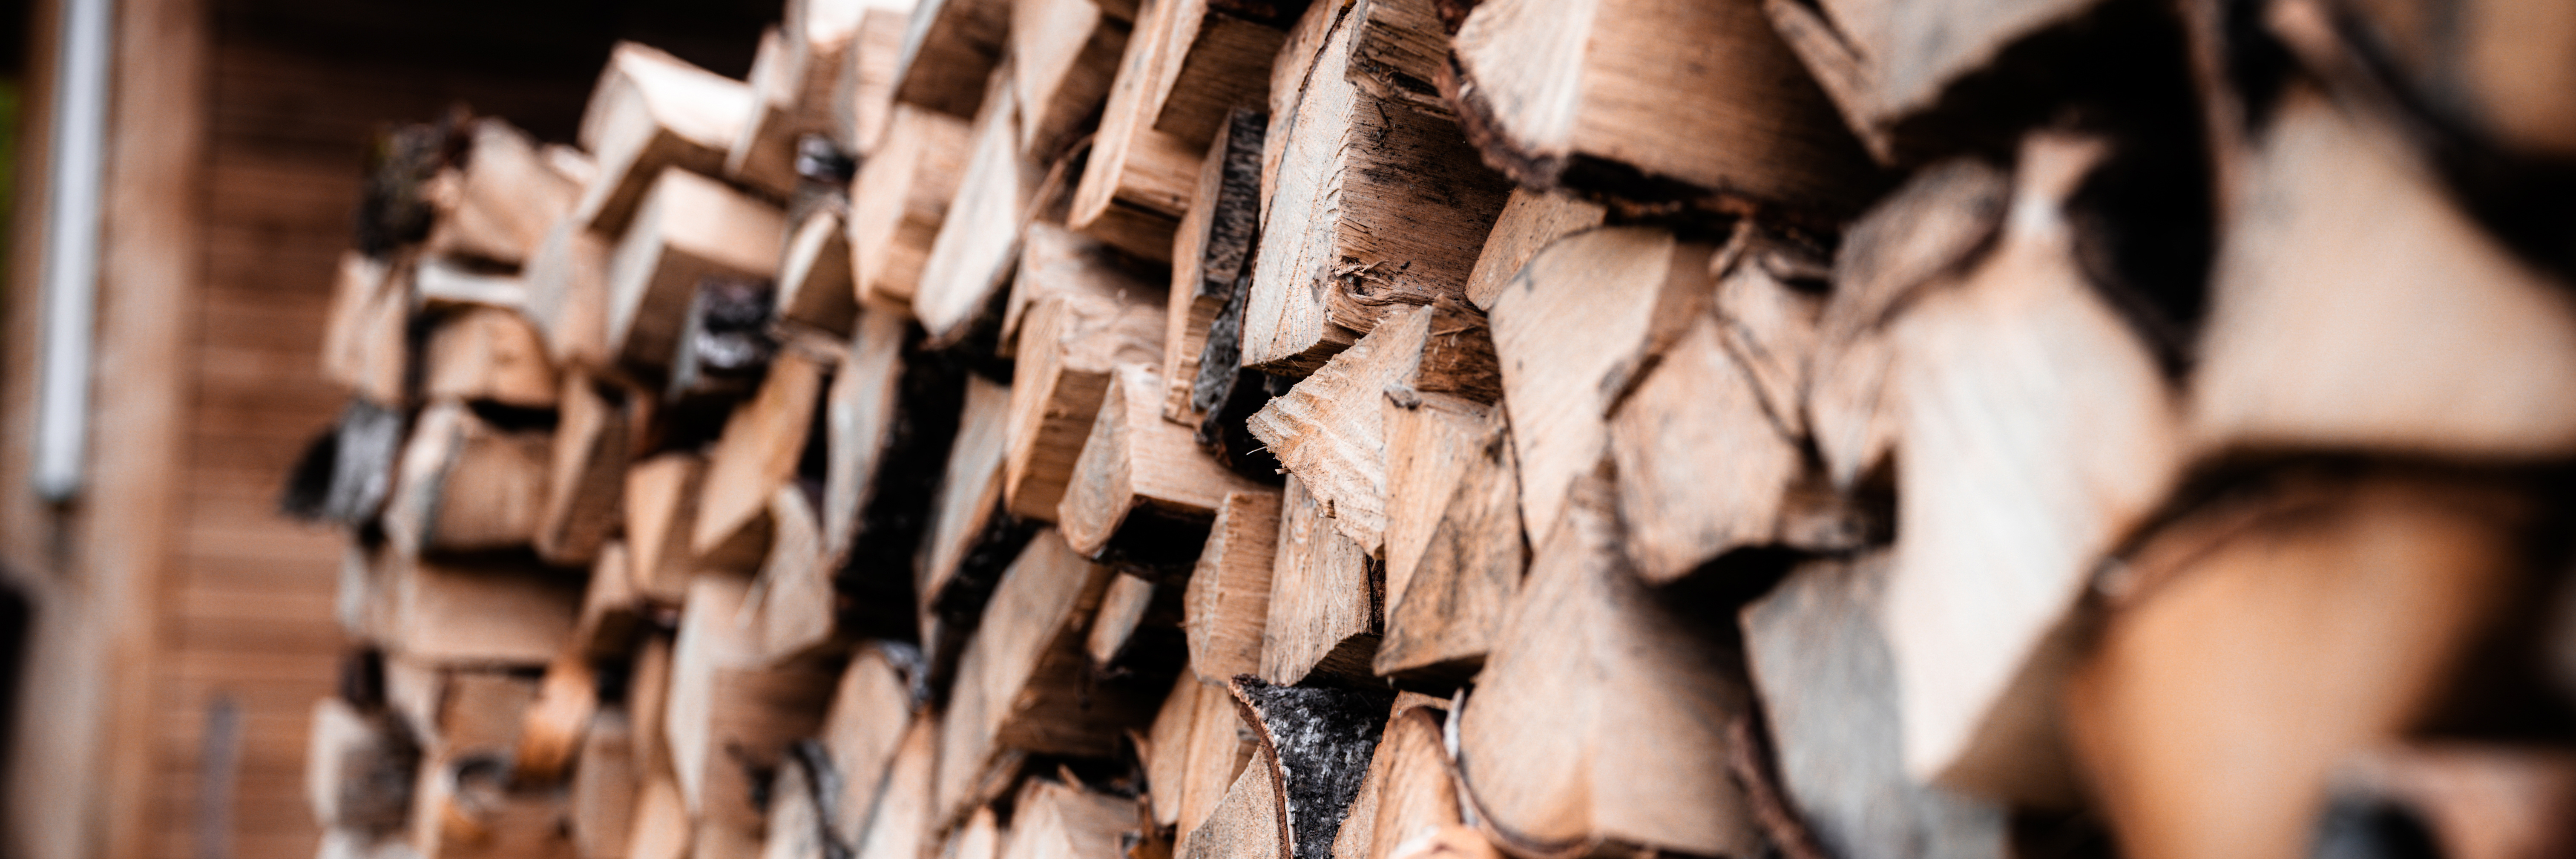 Firewood in storage.